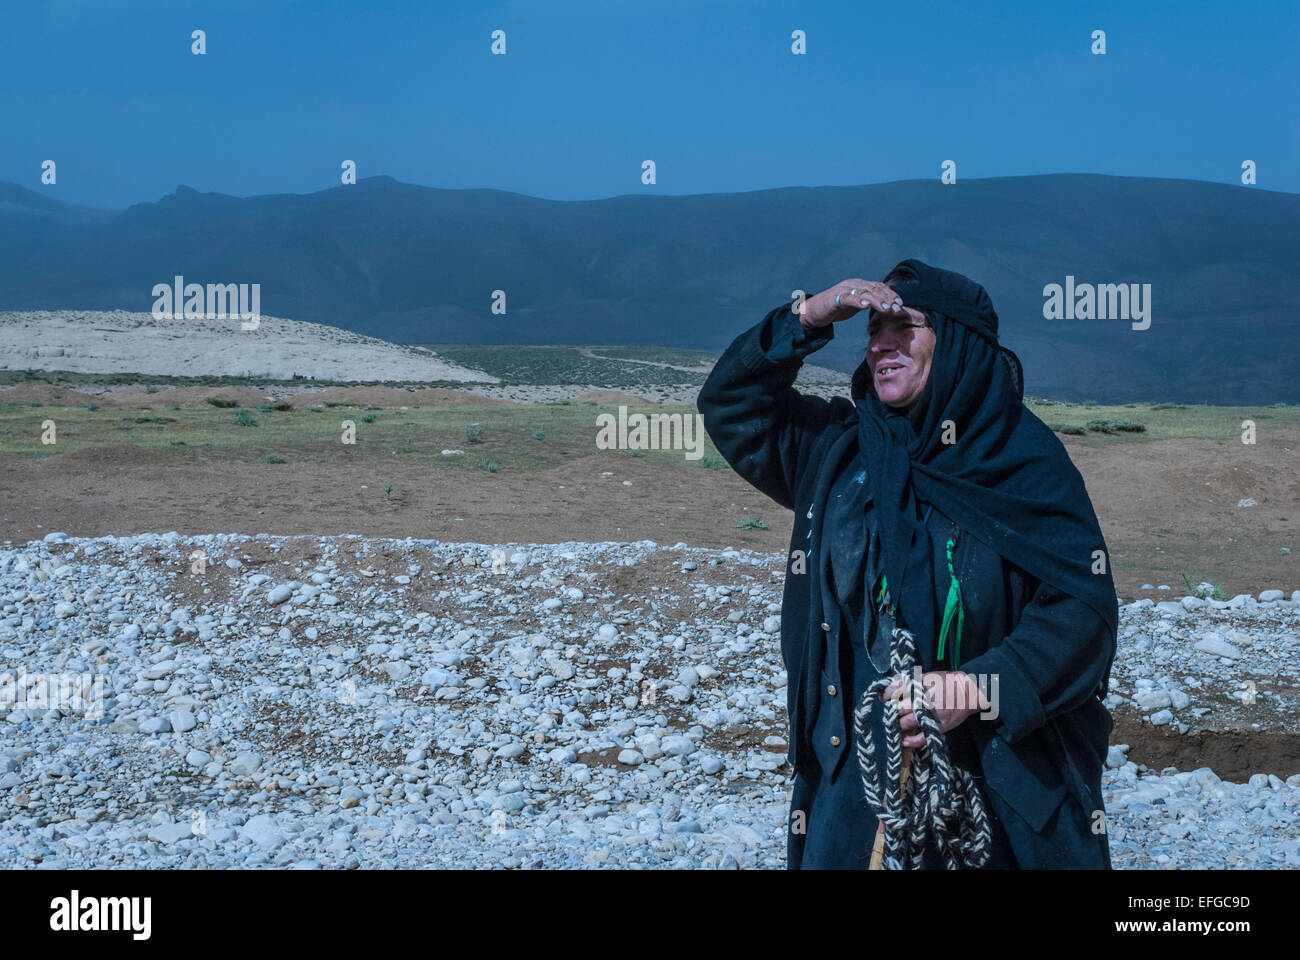 Makhtiari woman, Chaharmahal and Bakhtiari Province, Iran Stock Photo